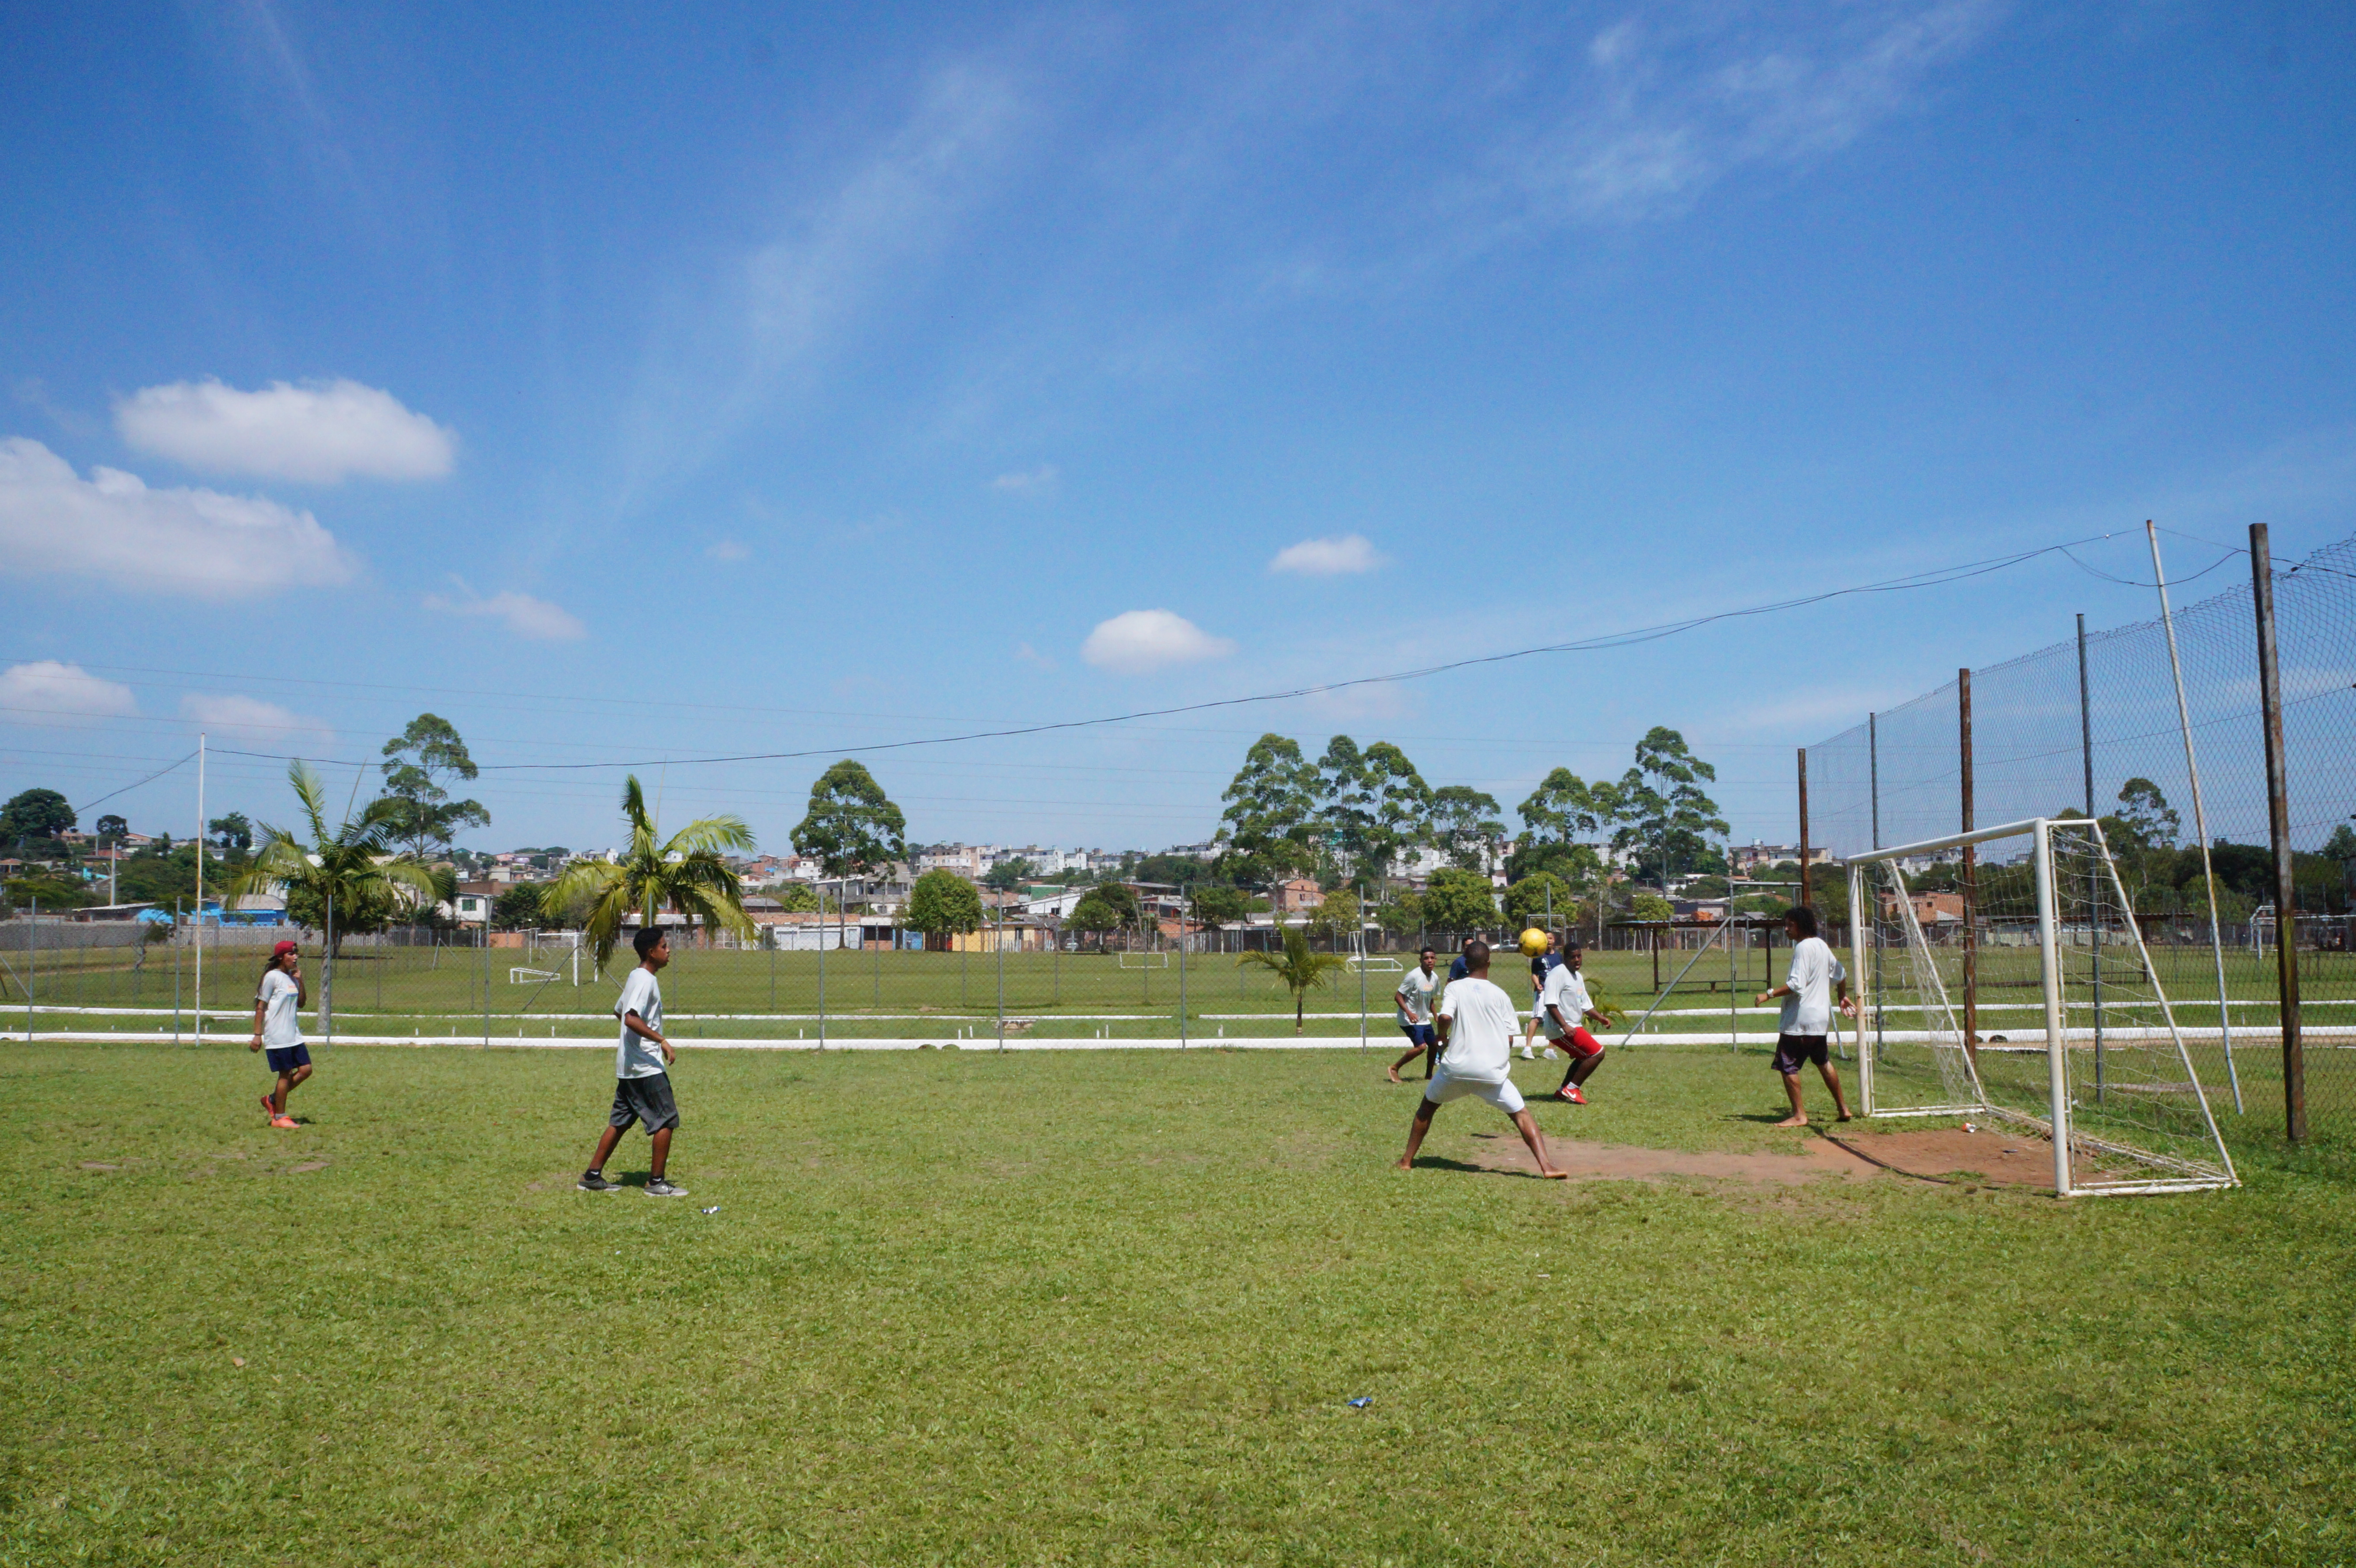 Atividades esportivas como forma de integração social